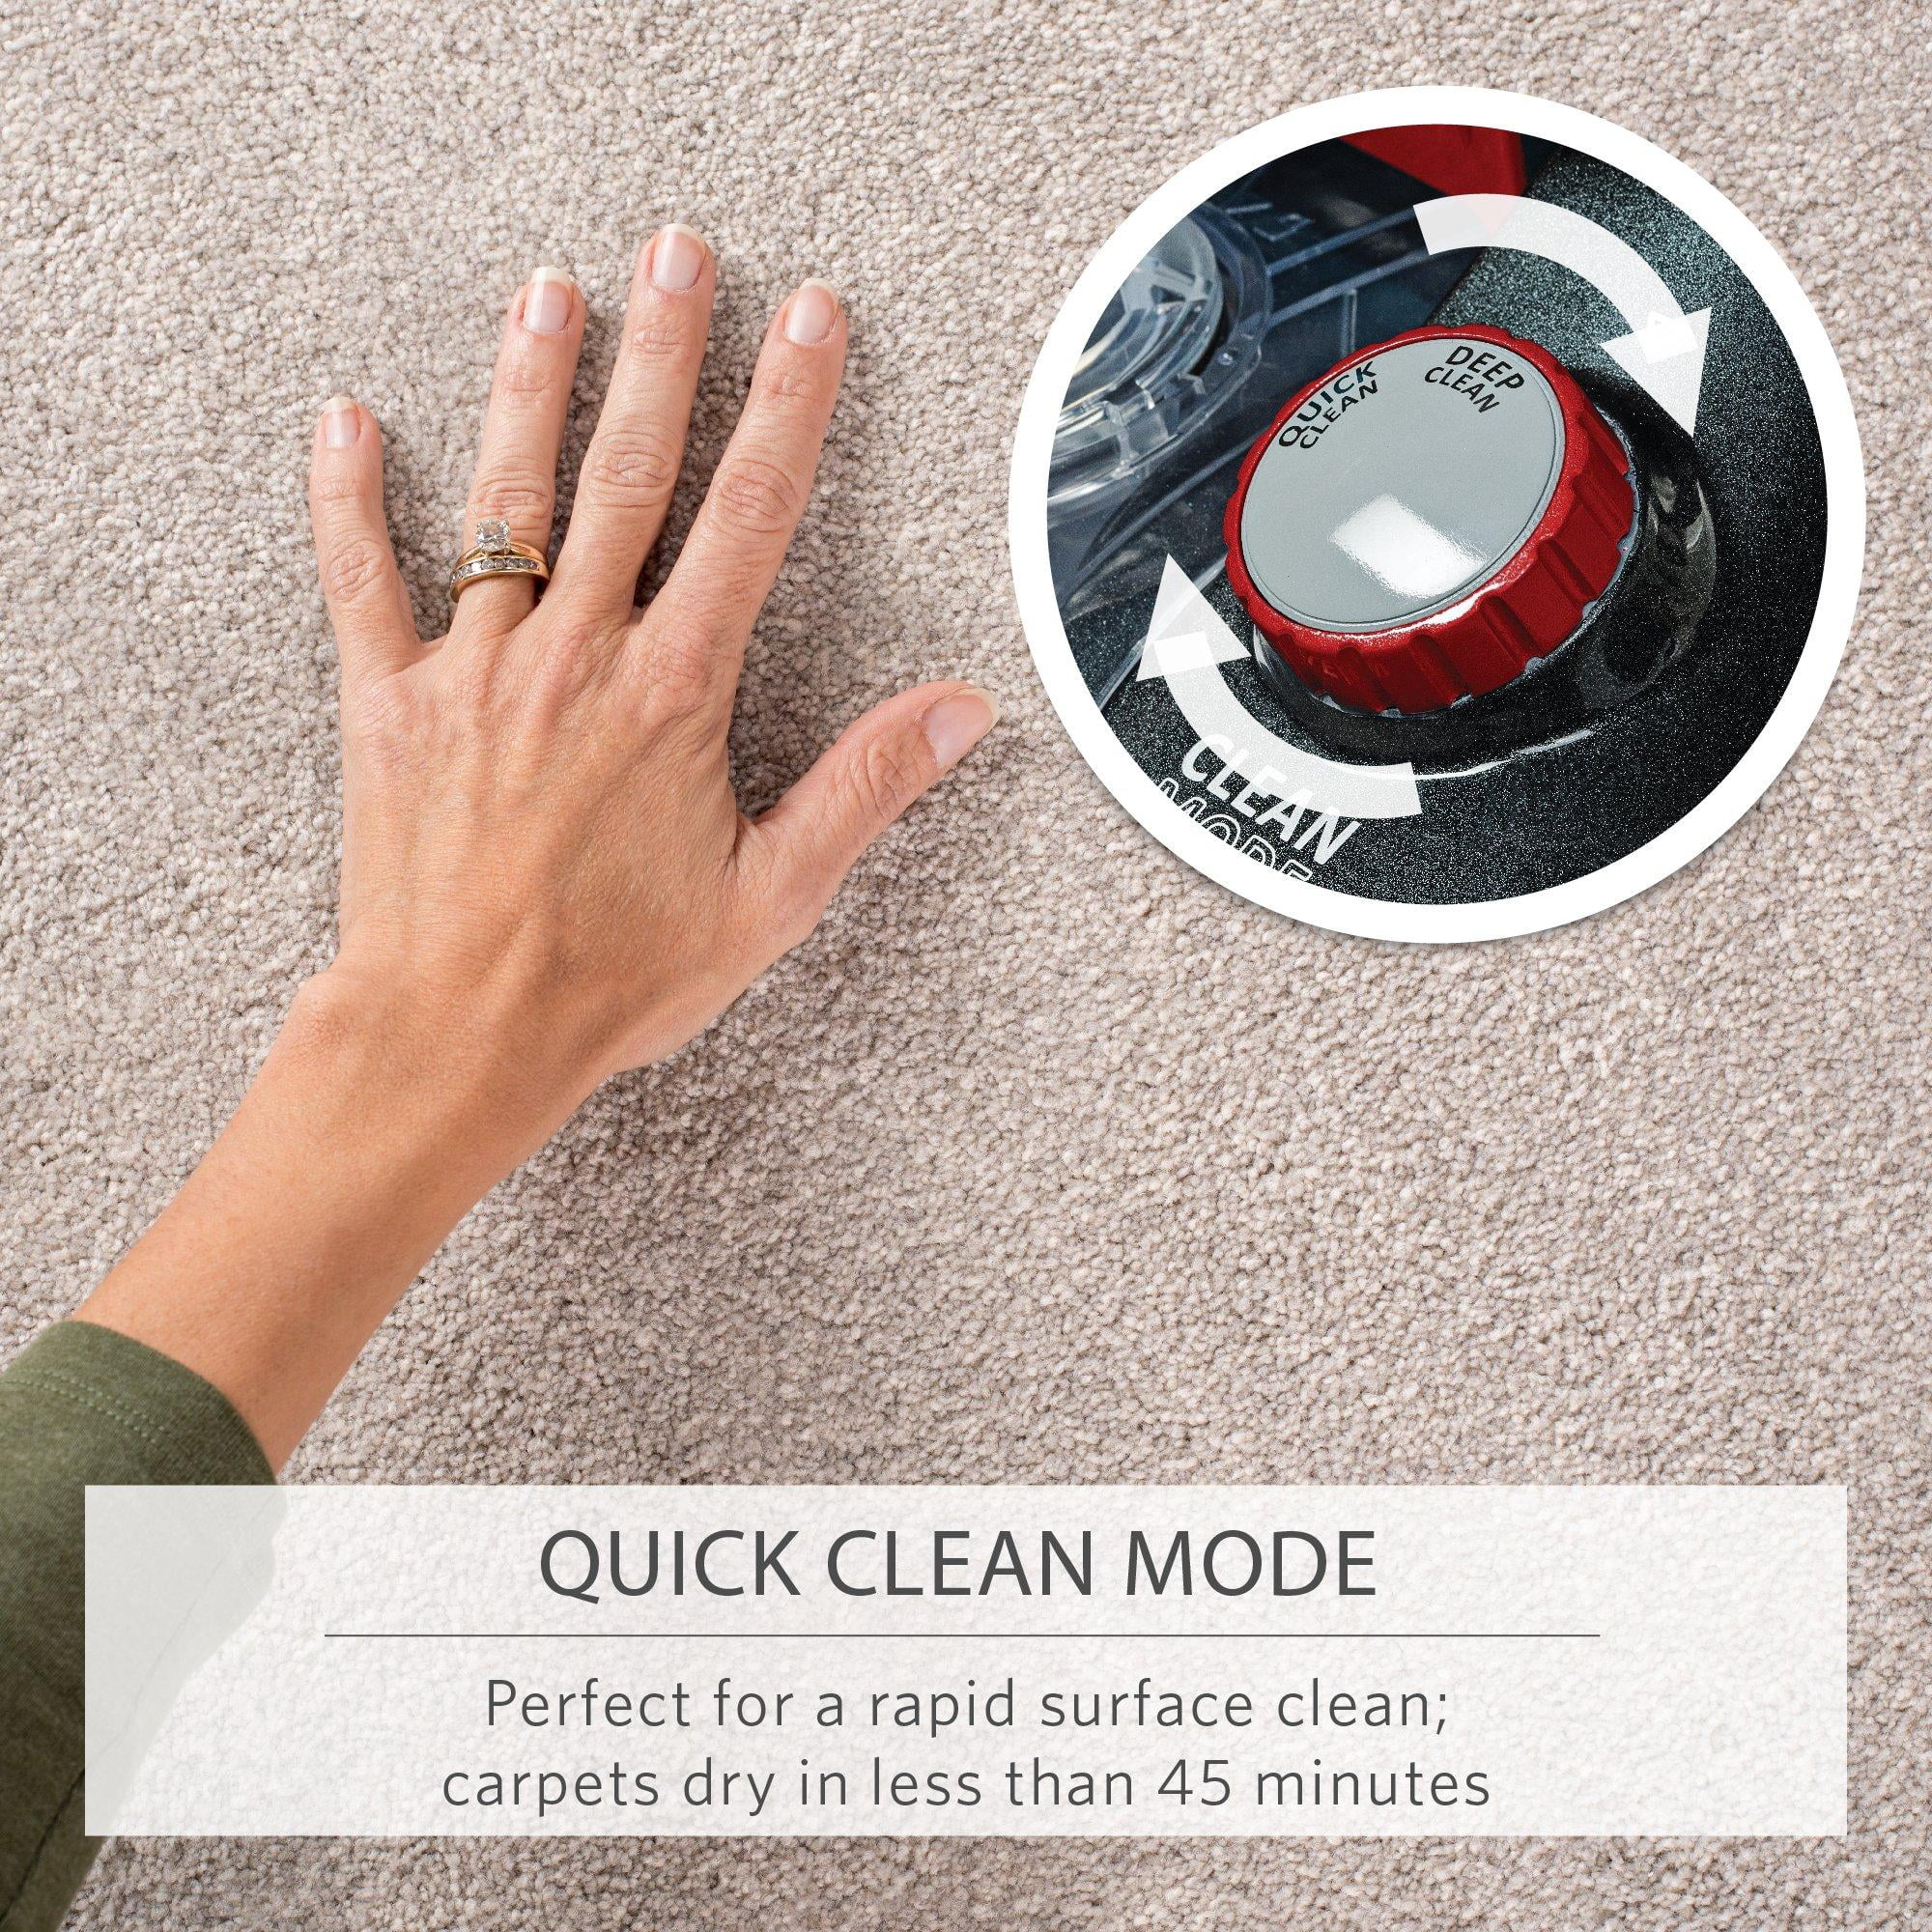 Hoover® Power Scrub Elite Pet Carpet Cleaner, 1 ct - Harris Teeter